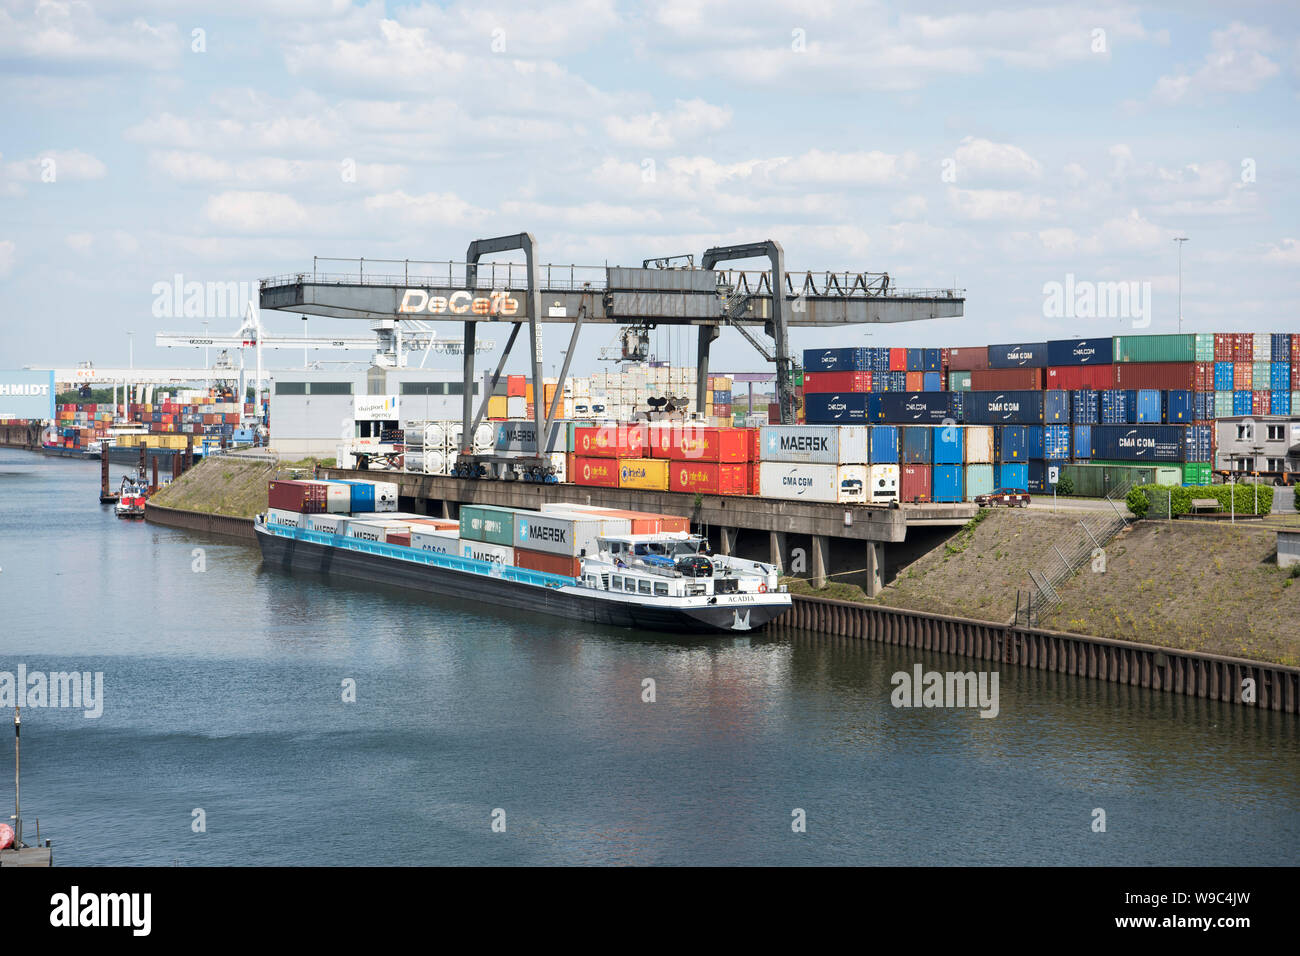 Deutschland, Duisburg, Einfahrt zum Hafen, rechts Duisburger Hafenverwaltung Foto Stock